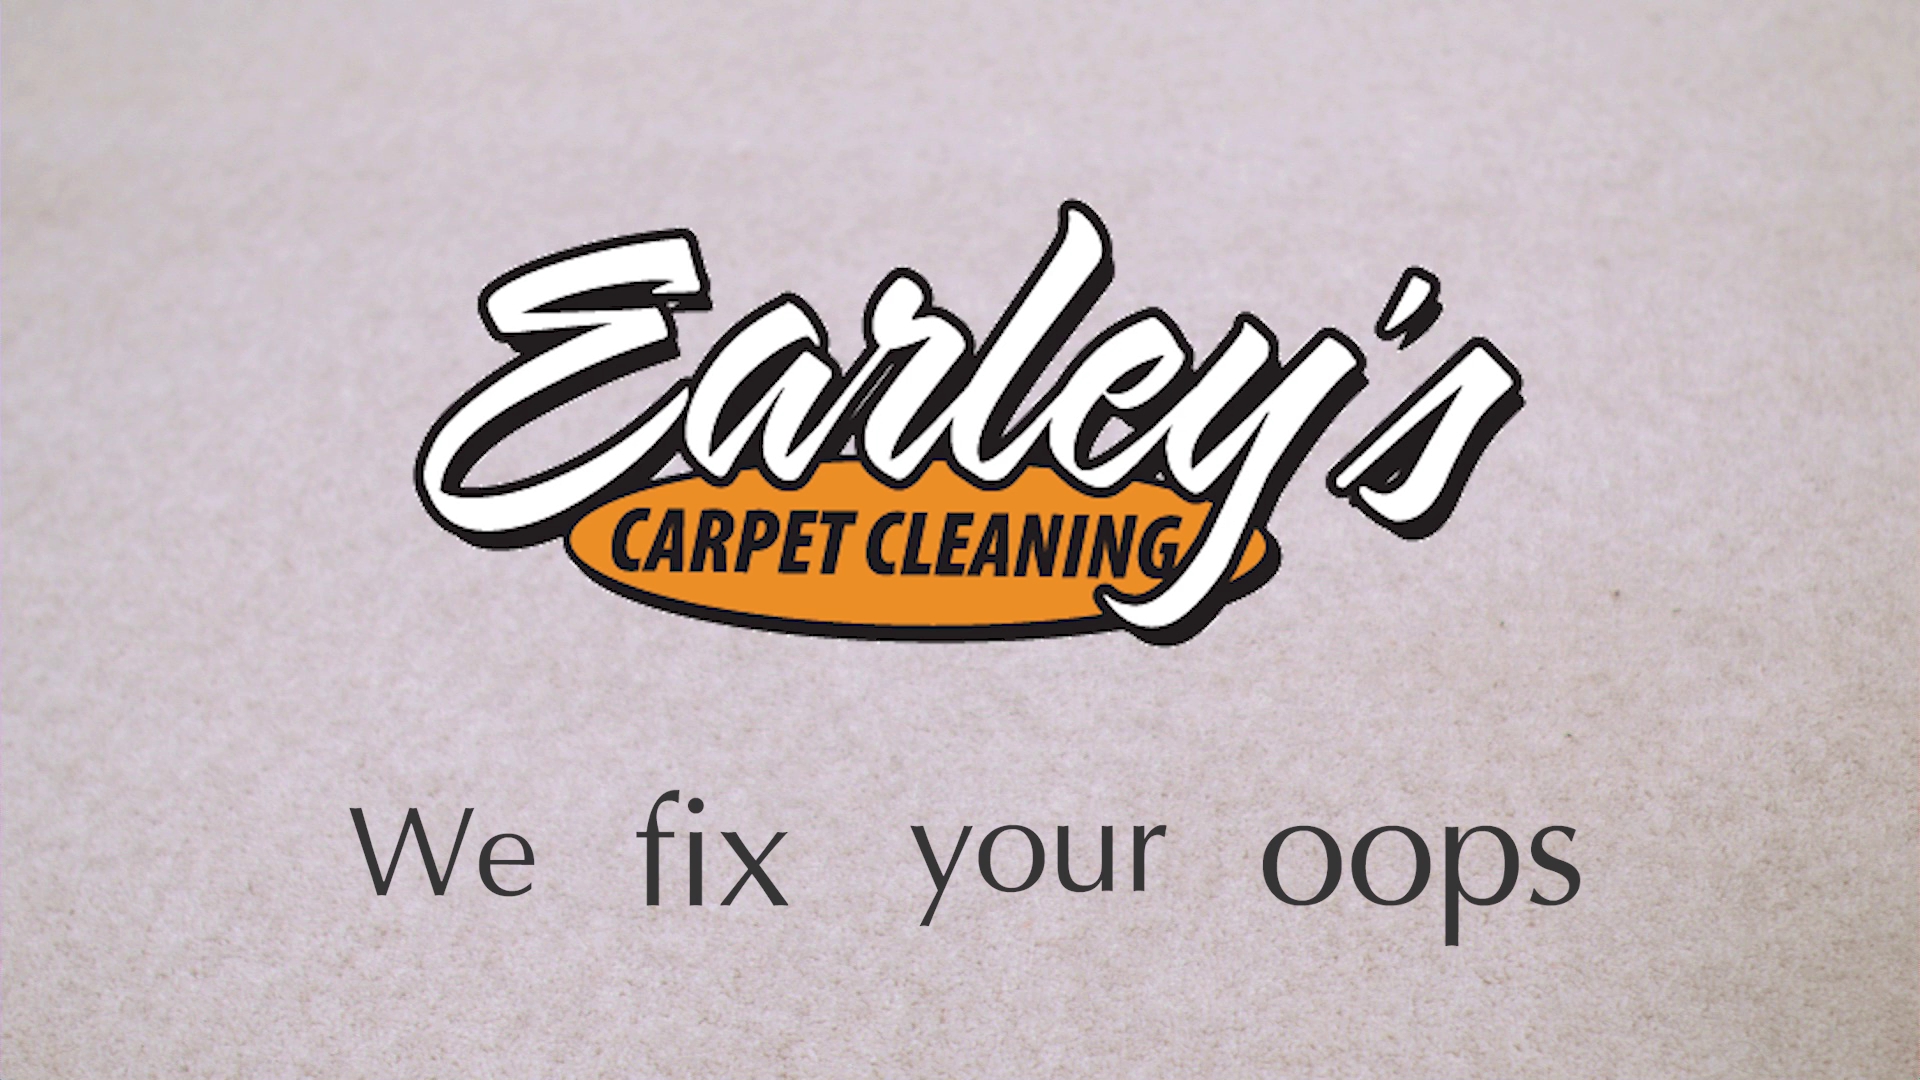 Earley's Carpet Cleaning 790 W 4100 S, Riverdale Utah 84405